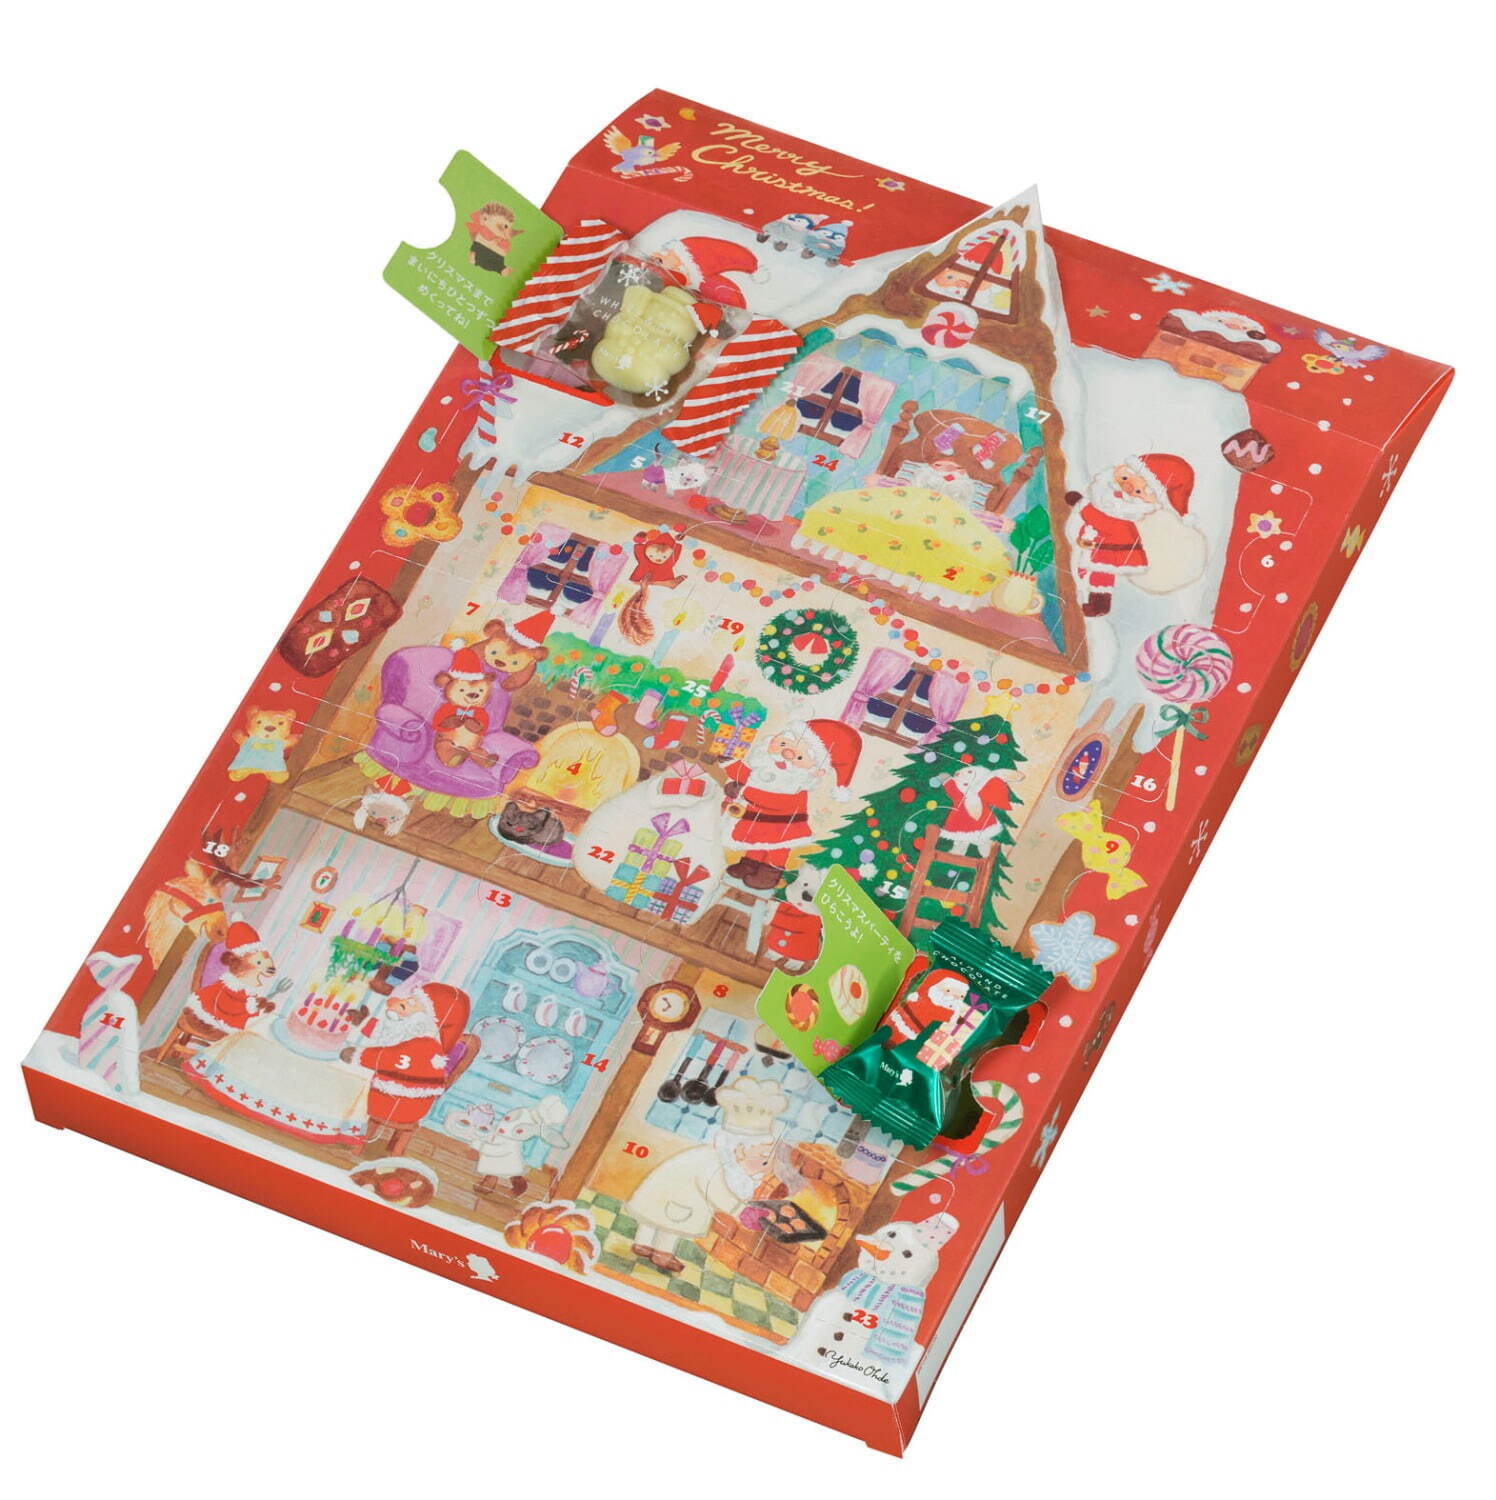 「クリスマスマジック」 チョコレート菓子26個 1,404円